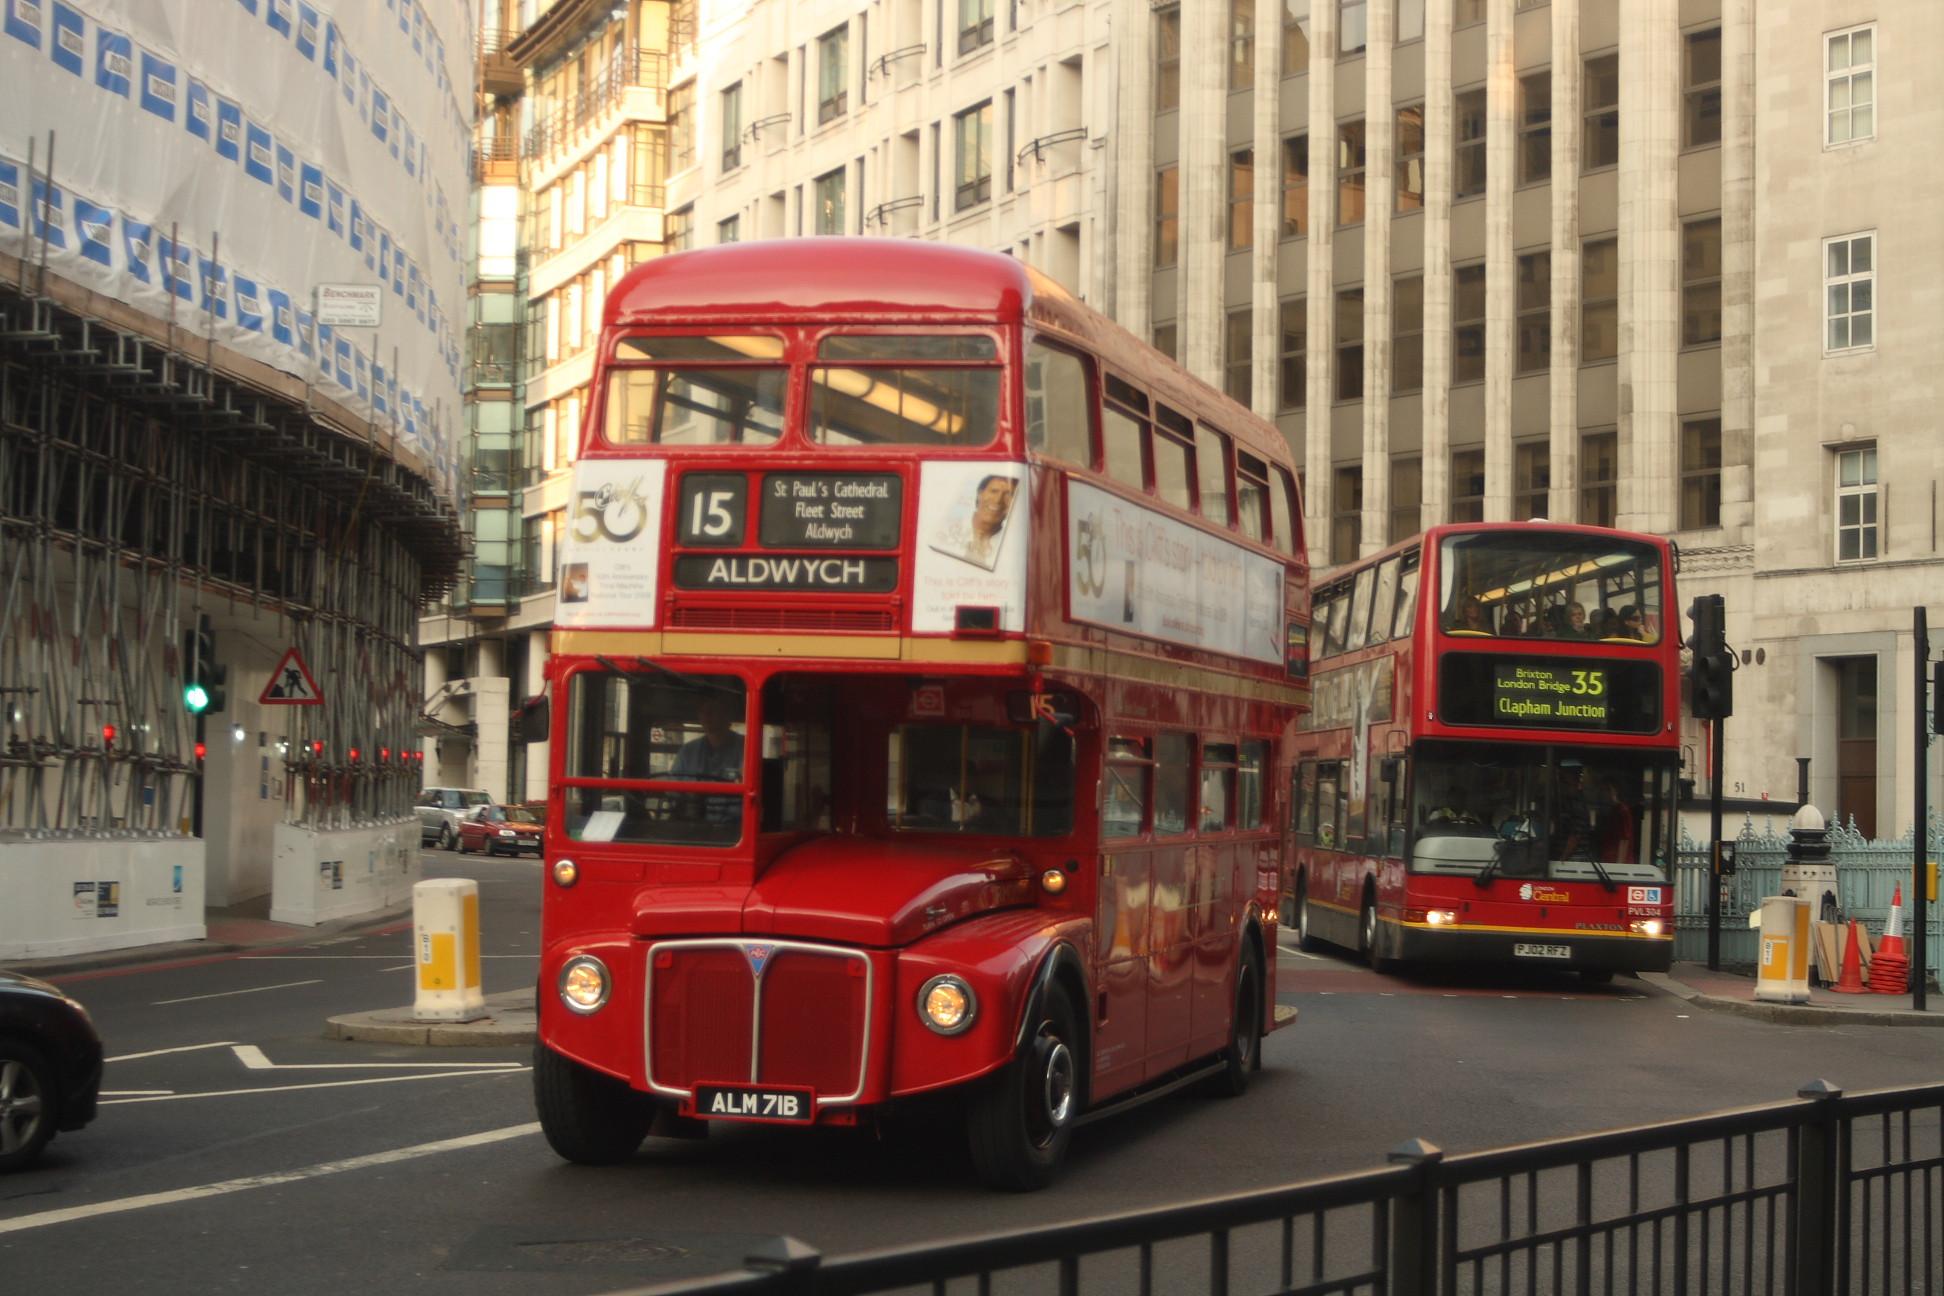 λονδινο αξιοθεατα μια φωτογραφία της πρωτεύουσας της Μεγάλης Βρετανίας με το Μπιγκ Μπέν και το Μάτι του λονδινου να ξεχωρίζουν